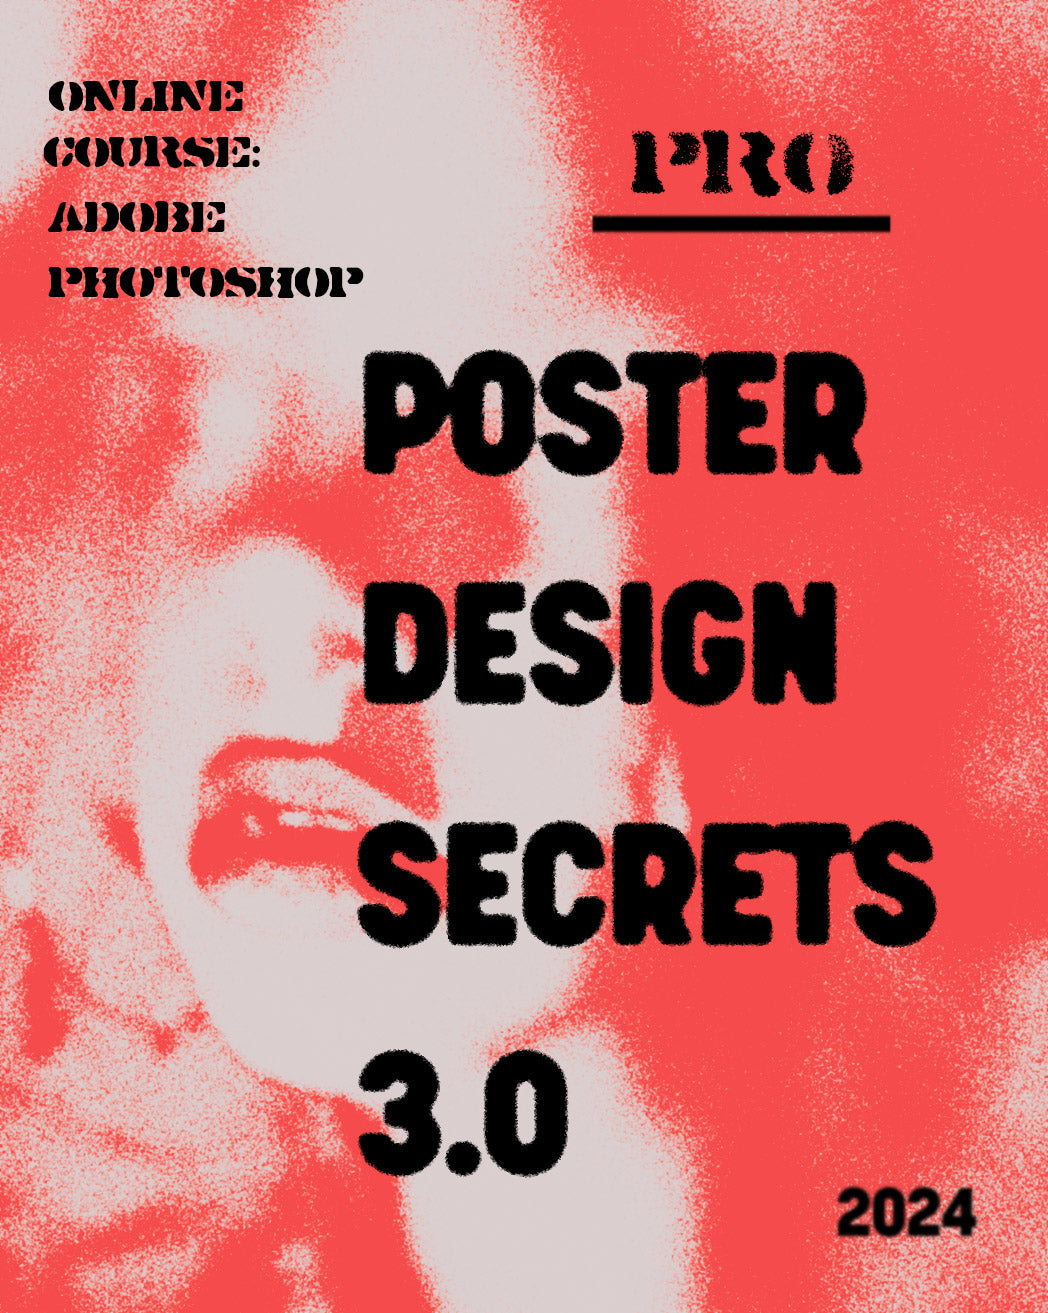 Poster Design Secrets PRO course